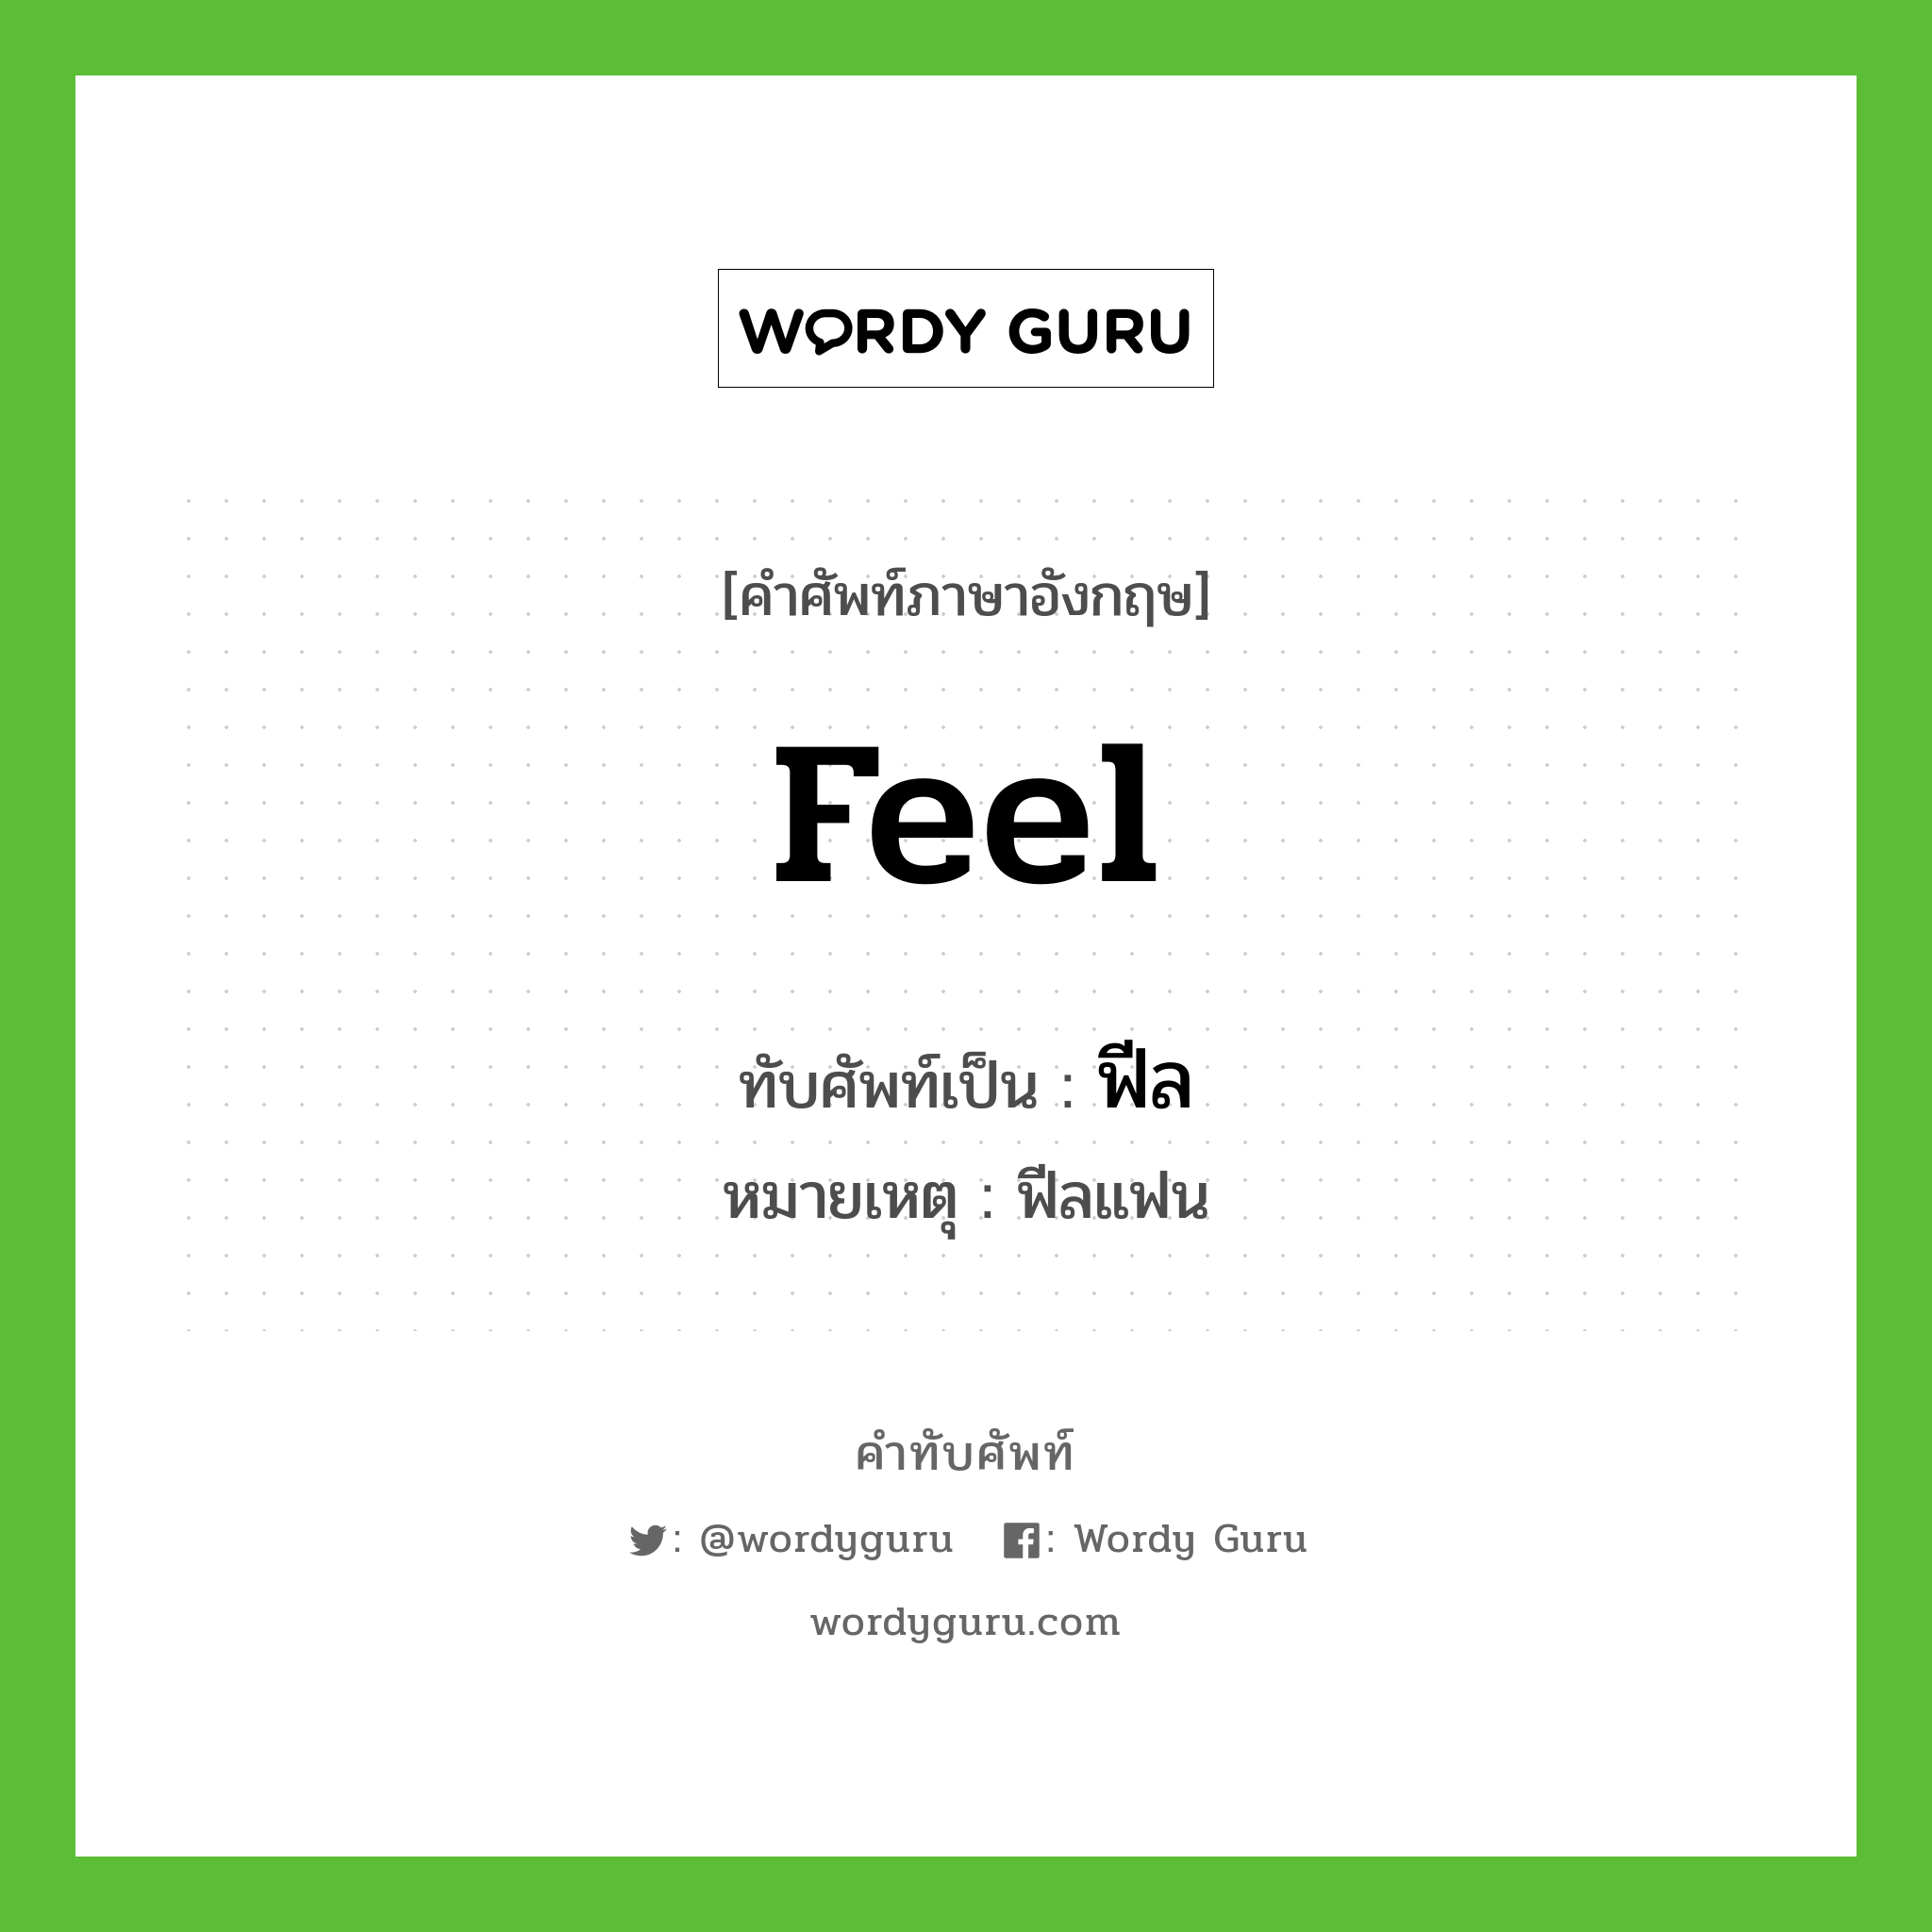 Feel เขียนเป็นคำไทยว่าอะไร?, คำศัพท์ภาษาอังกฤษ Feel ทับศัพท์เป็น ฟีล หมายเหตุ ฟีลแฟน